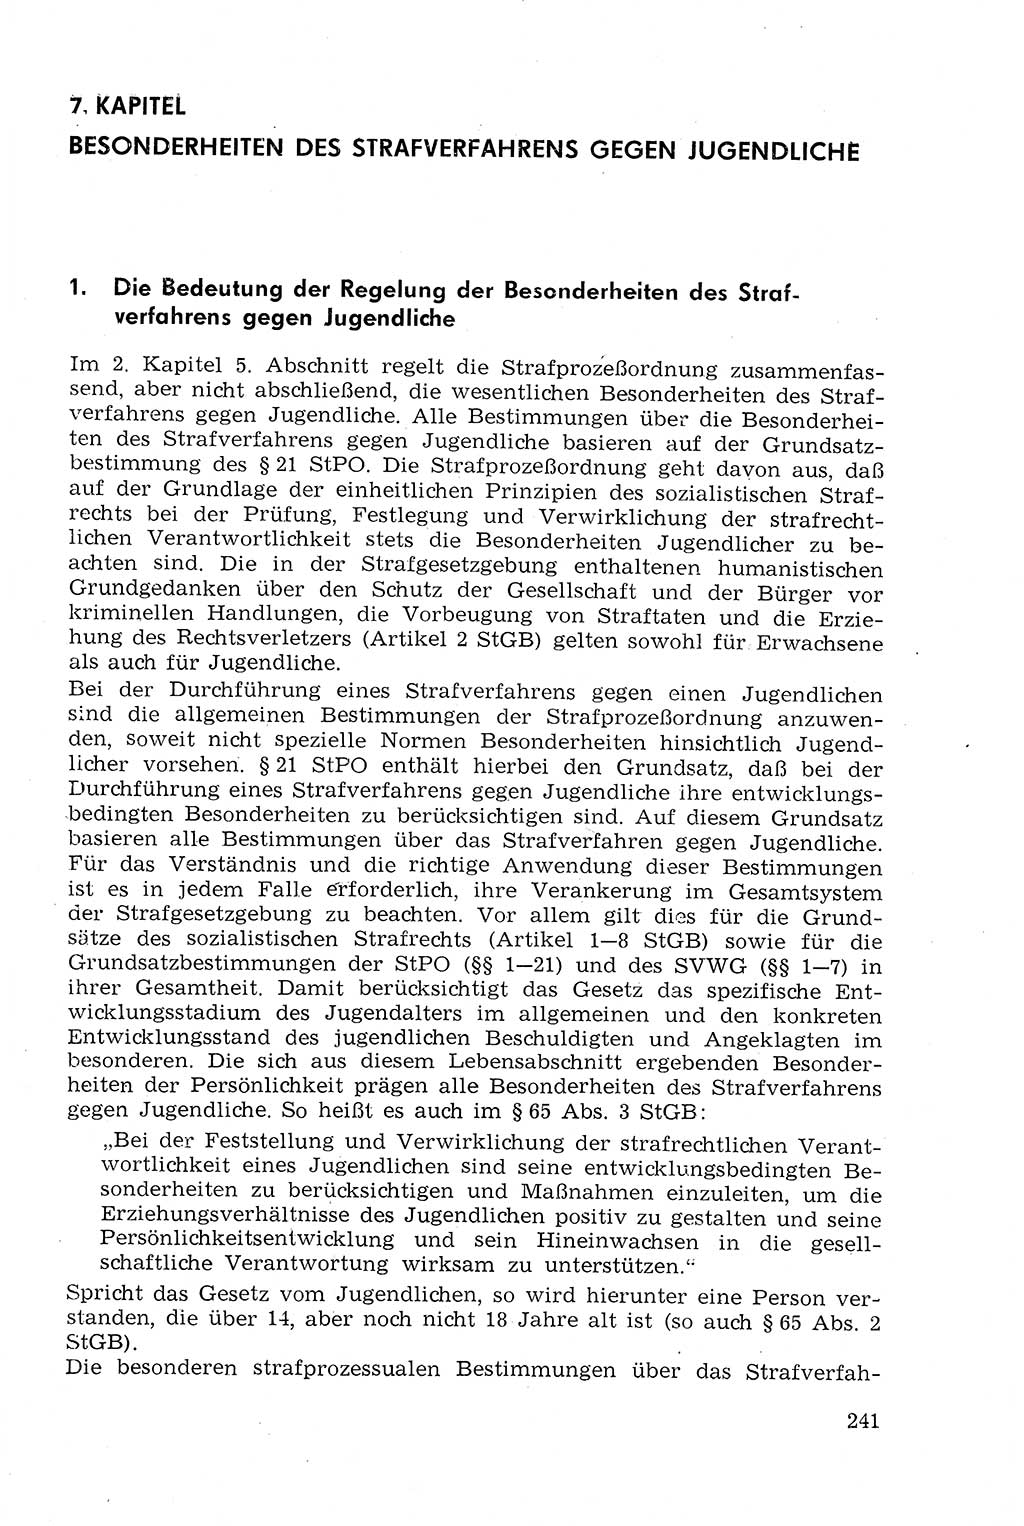 Strafprozeßrecht der DDR (Deutsche Demokratische Republik), Lehrmaterial 1969, Seite 241 (Strafprozeßr. DDR Lehrmat. 1969, S. 241)